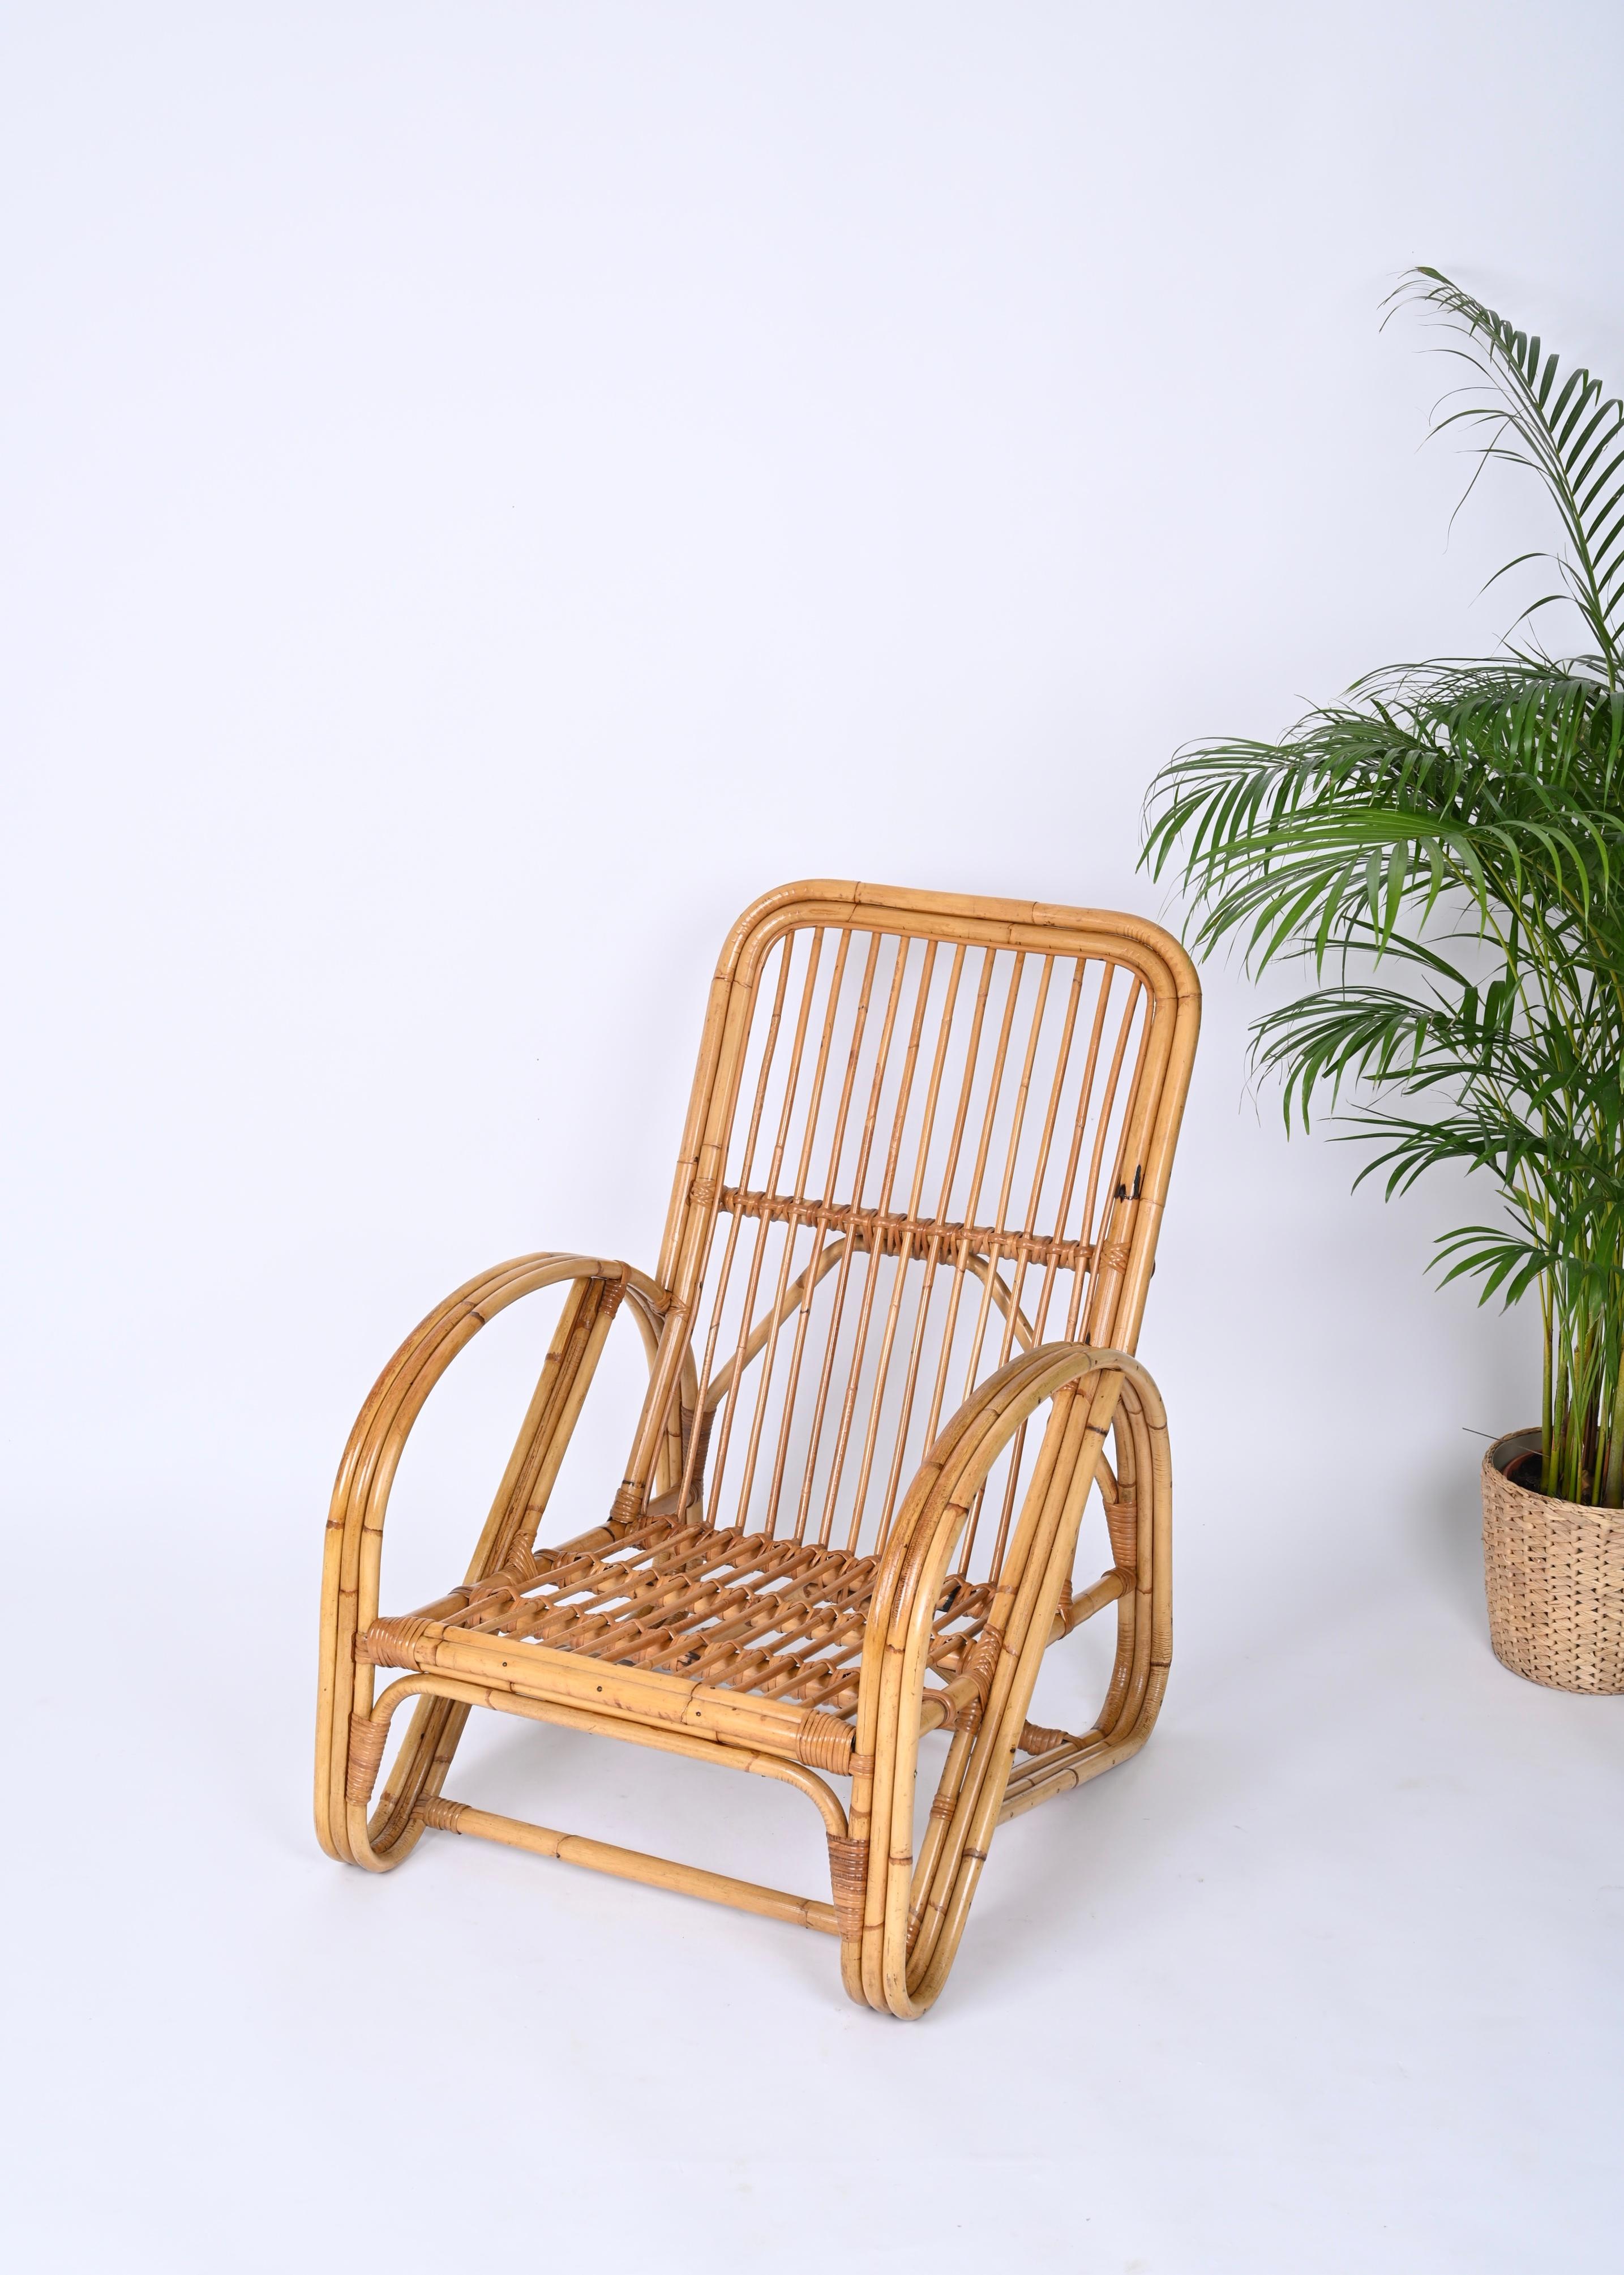 Fantastischer Mid-Century-Sessel aus Bambus und Rattan. Dieser wunderbare Sessel wurde in den 1970er Jahren von Vivai del Sud in Italien hergestellt. 

Die Struktur ist vollständig aus gebogenem Bambus mit perfekten Proportionen gefertigt. Die